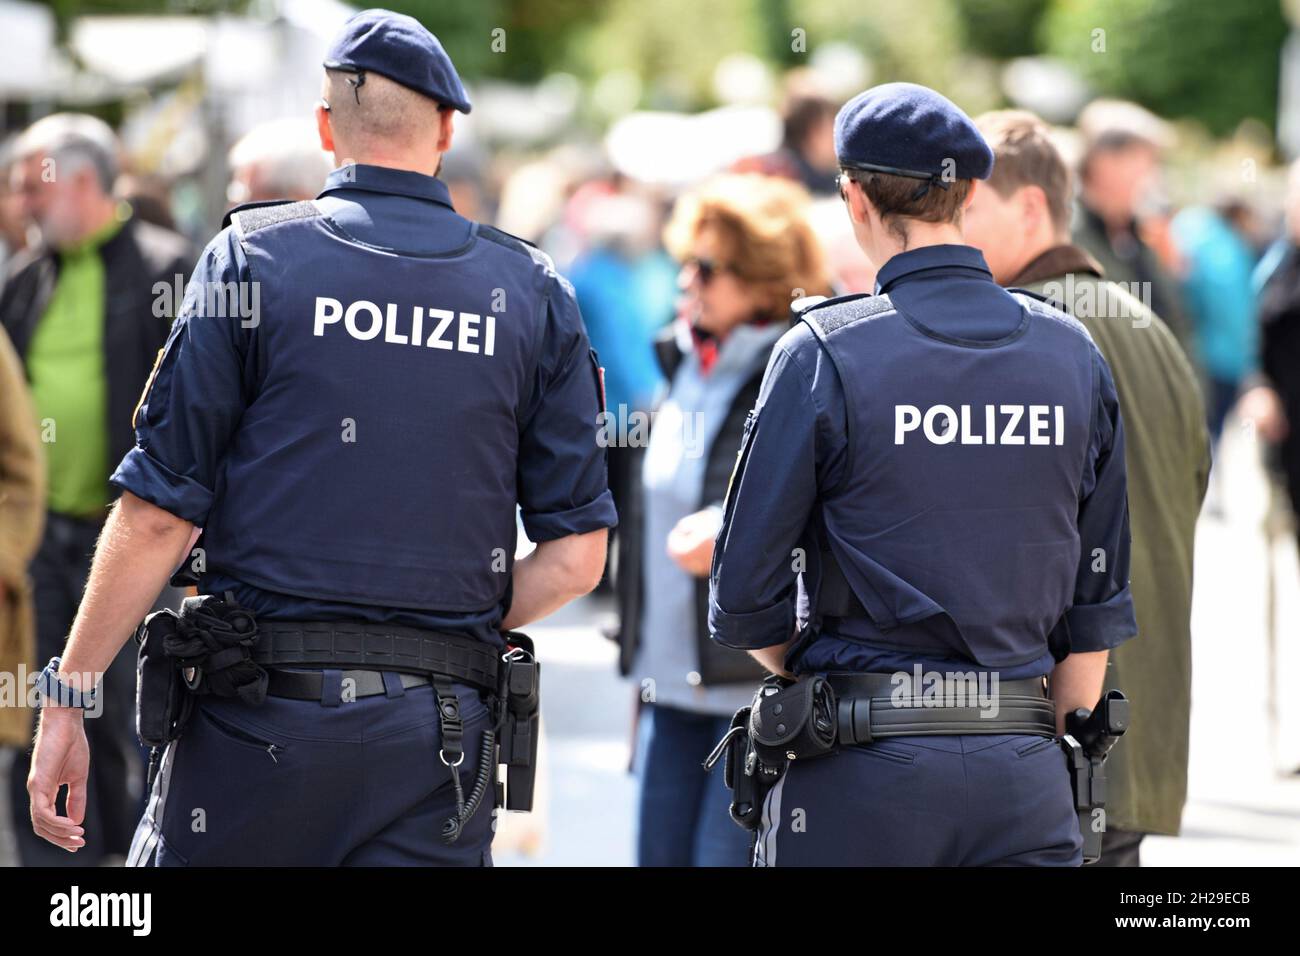 Polizisten bei einer Veranstaltung in Gmunden, Salzkammergut, Oberösterreich, Europa - Polizeibeamte bei einer Veranstaltung in Gmunden, Salzkammergut, Oberau Stockfoto